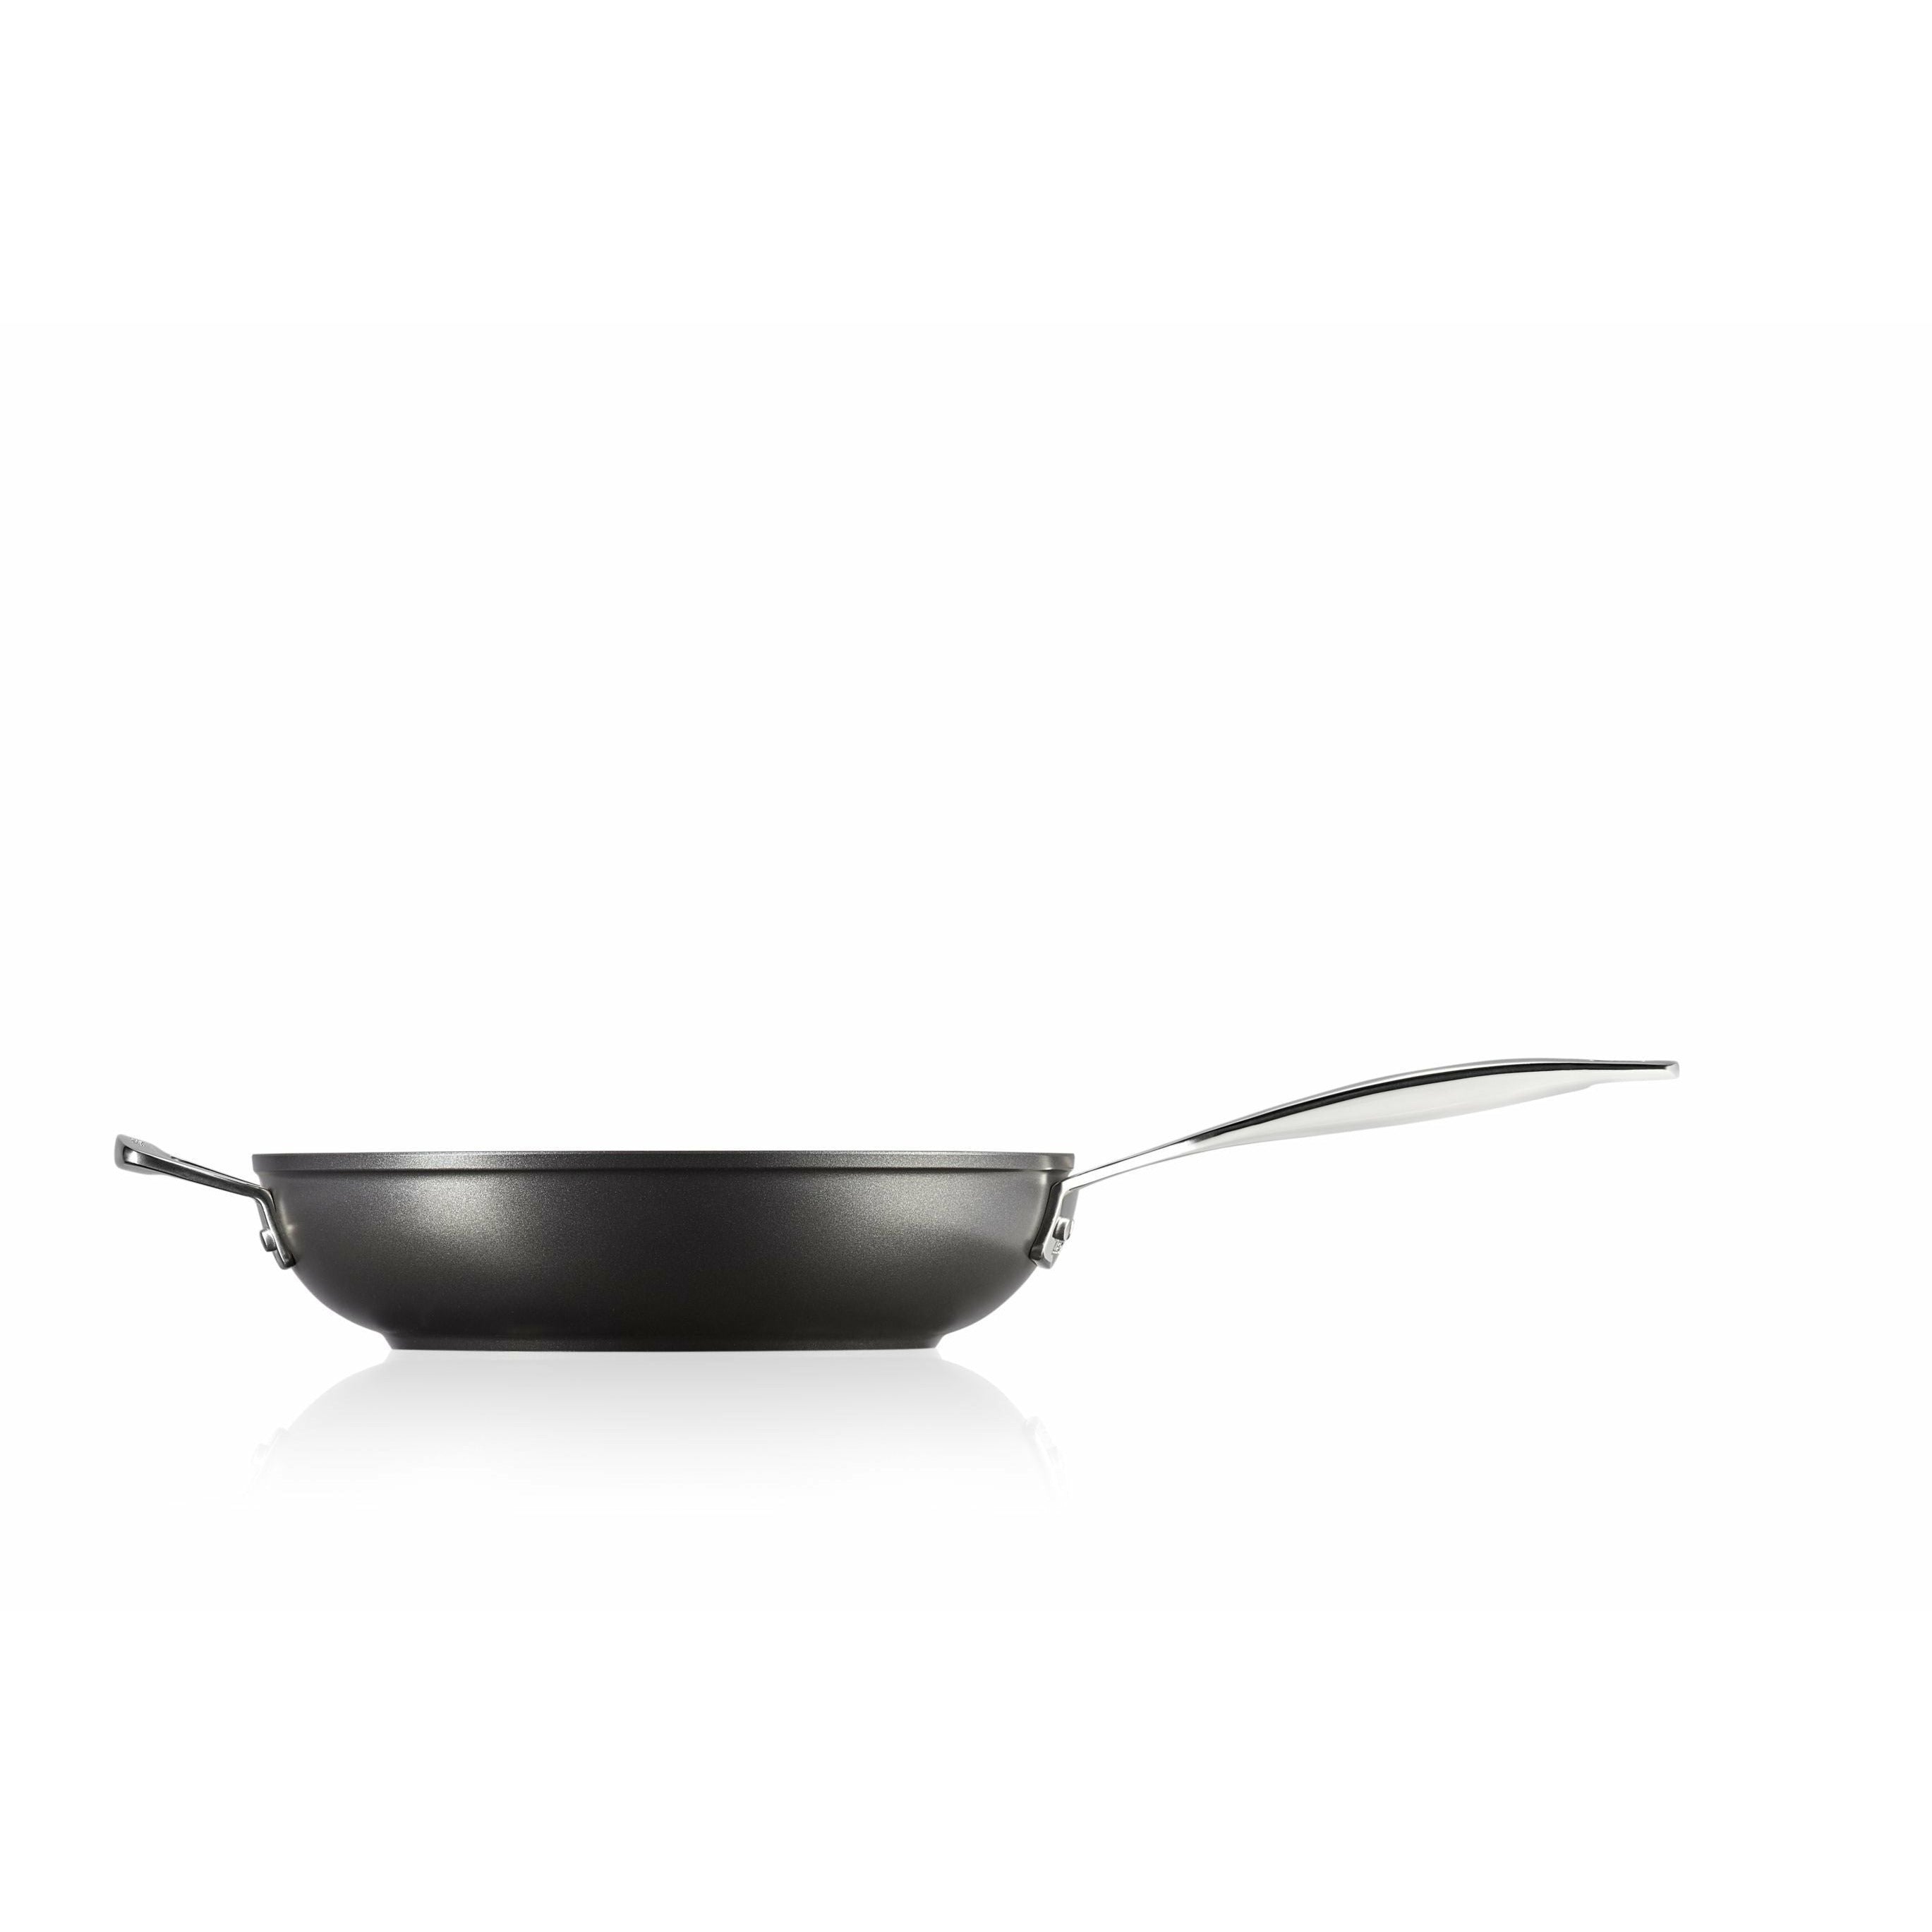 Le Creuset Aluminium Non Stick High Pan With Counter Handle, 26 Cm